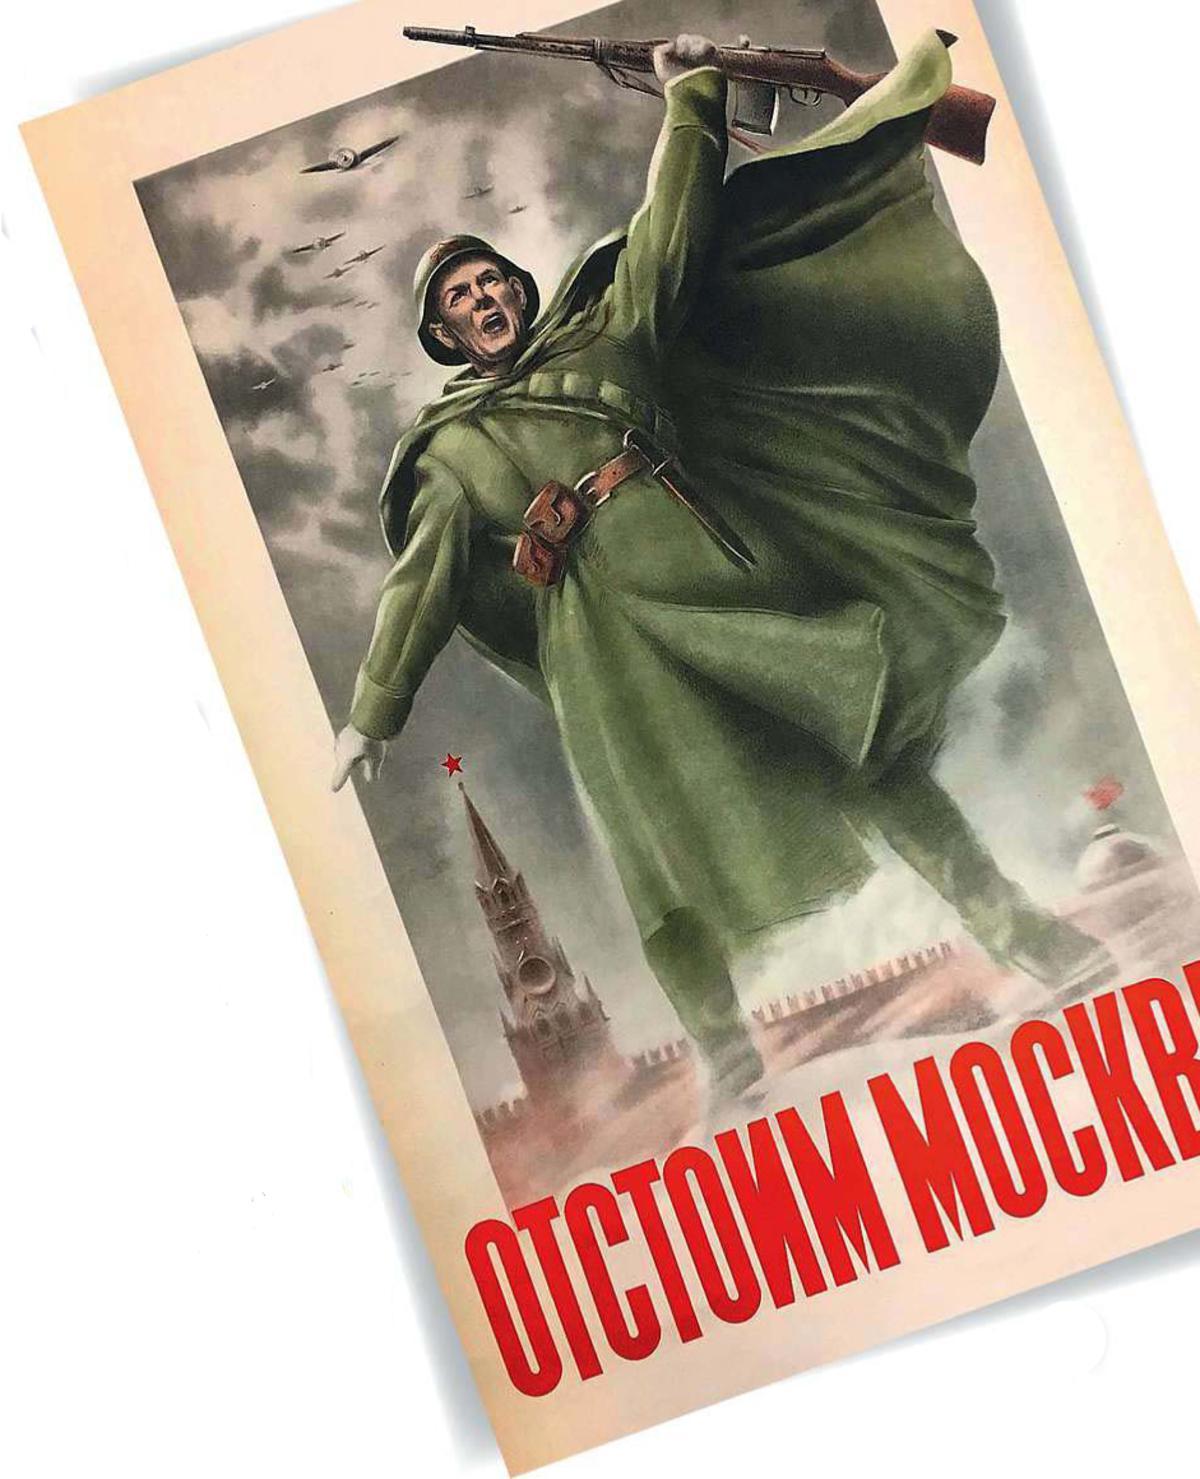 3 ‘Wij zullen Moskou verdedigen.’ Sovjetaffiche uit 1941.